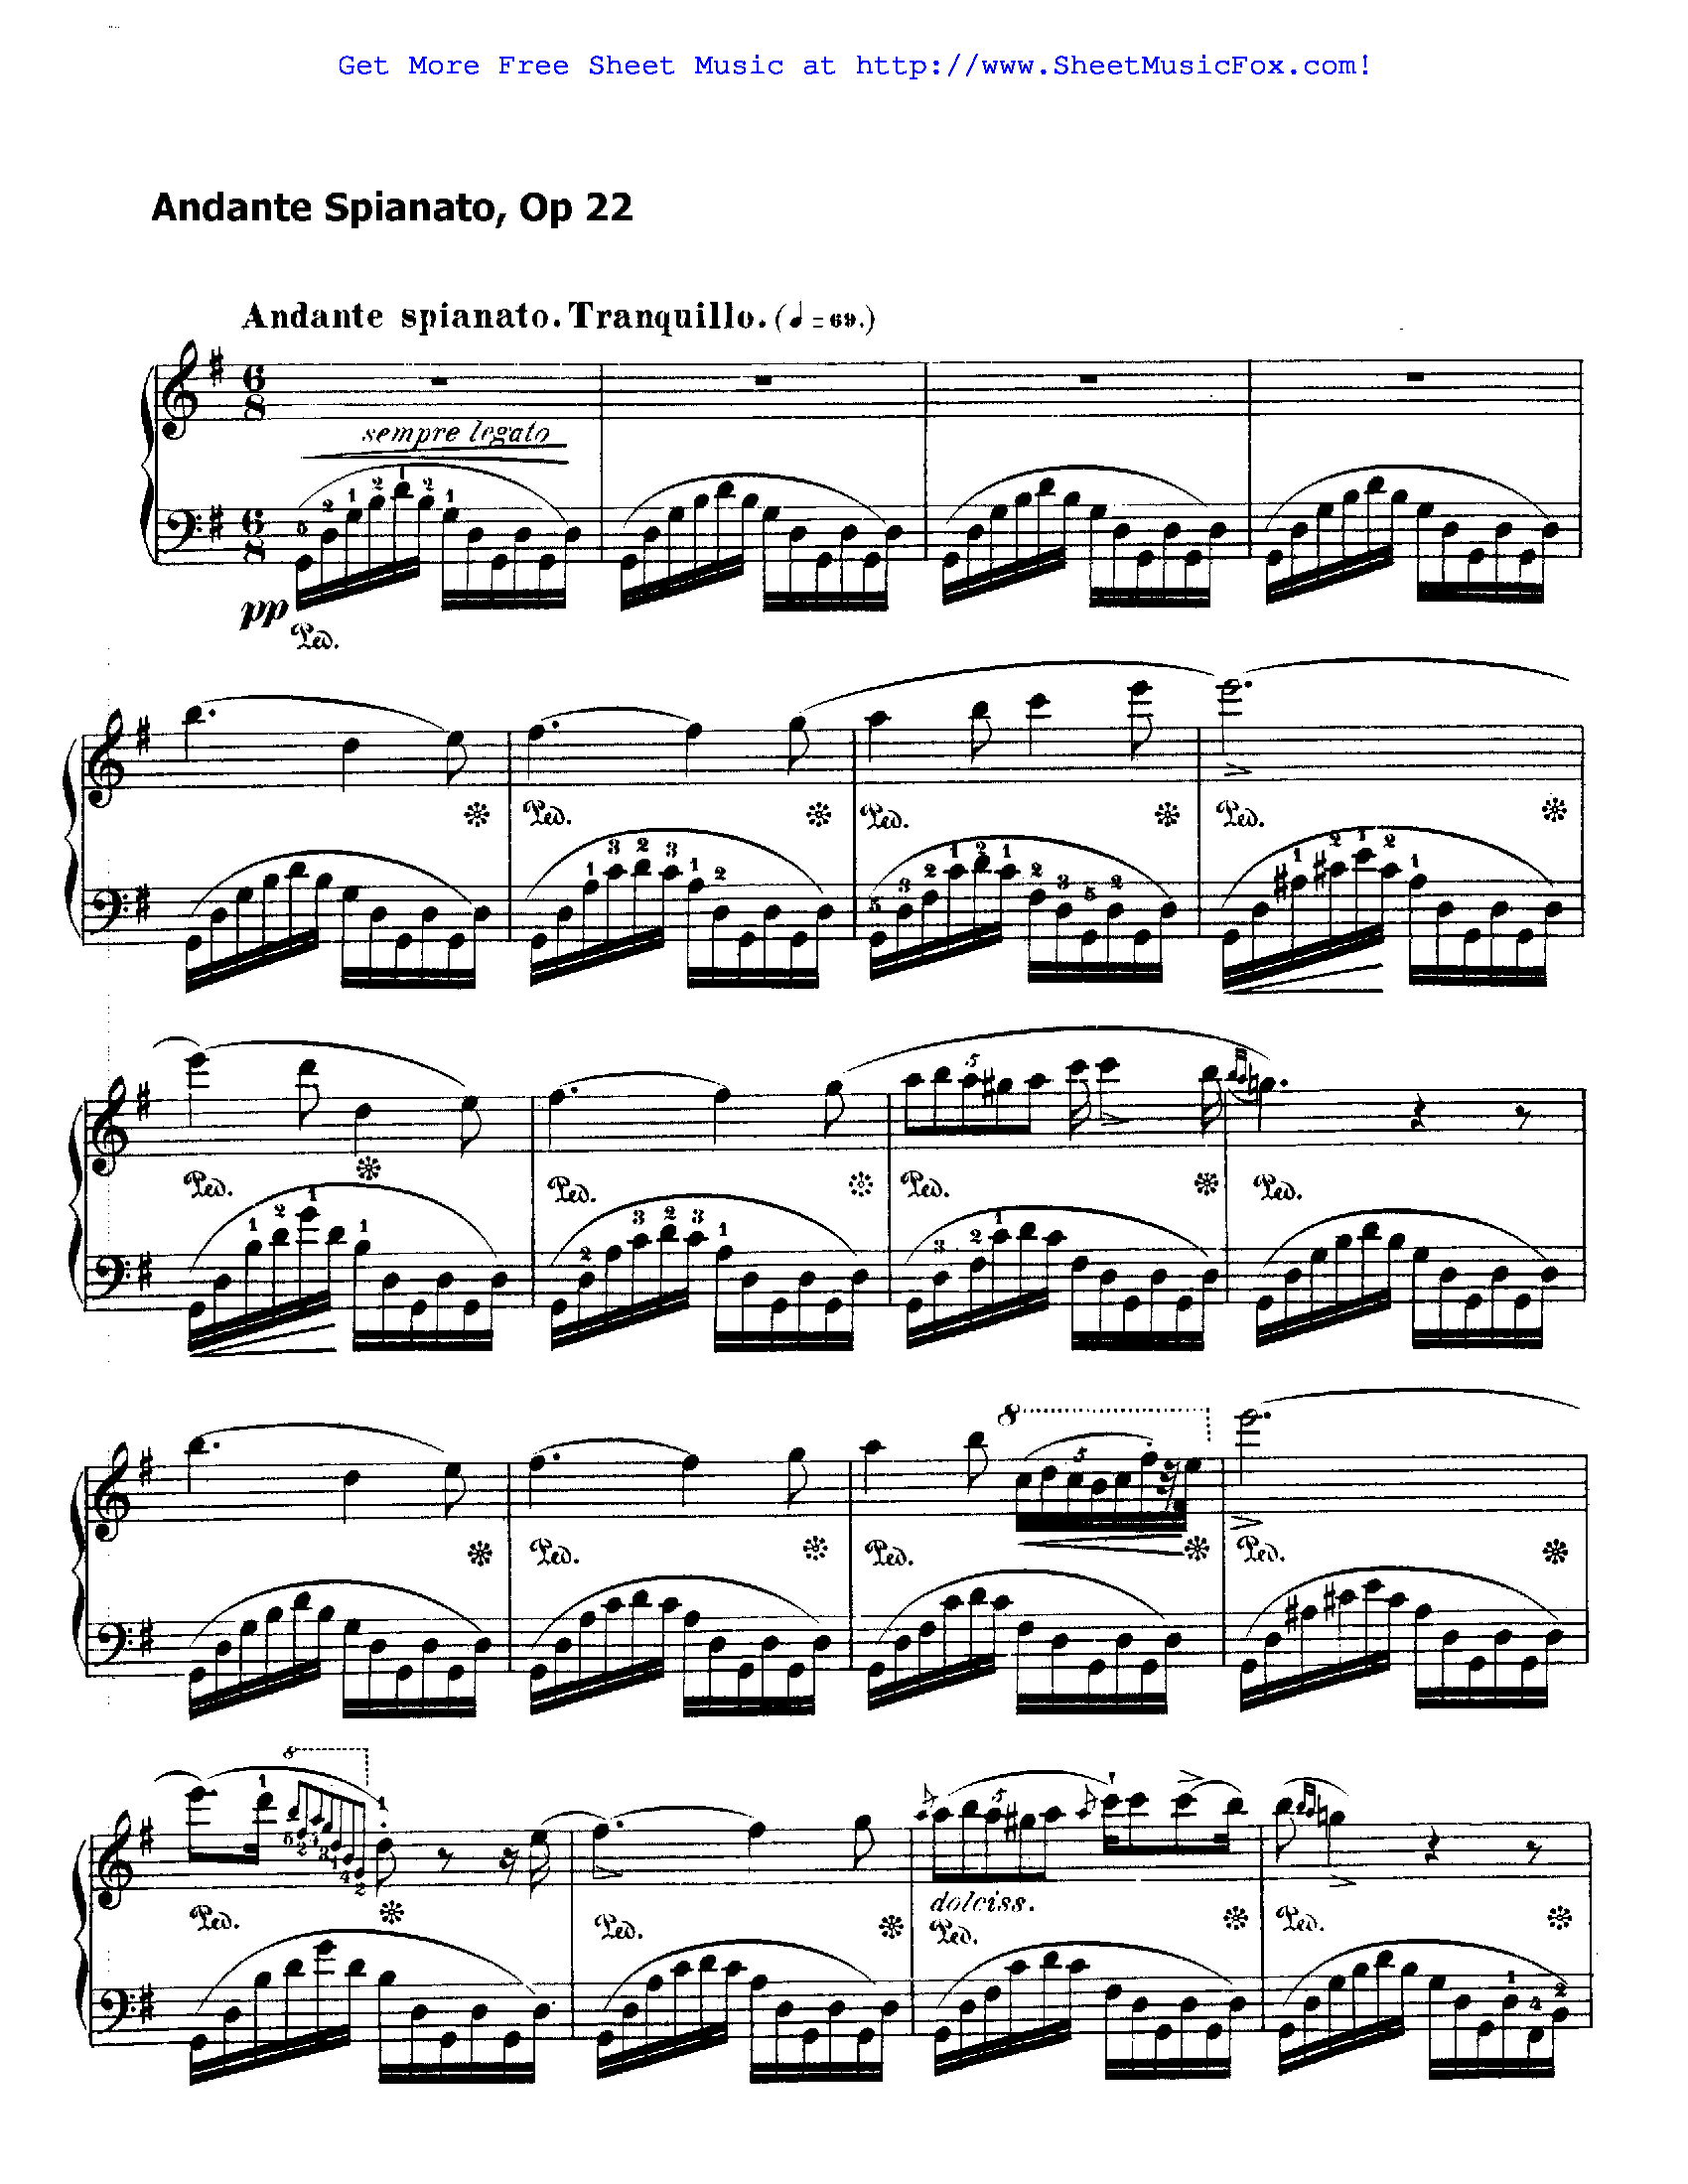 Boehm Grand Polonaise Flute Pdfl